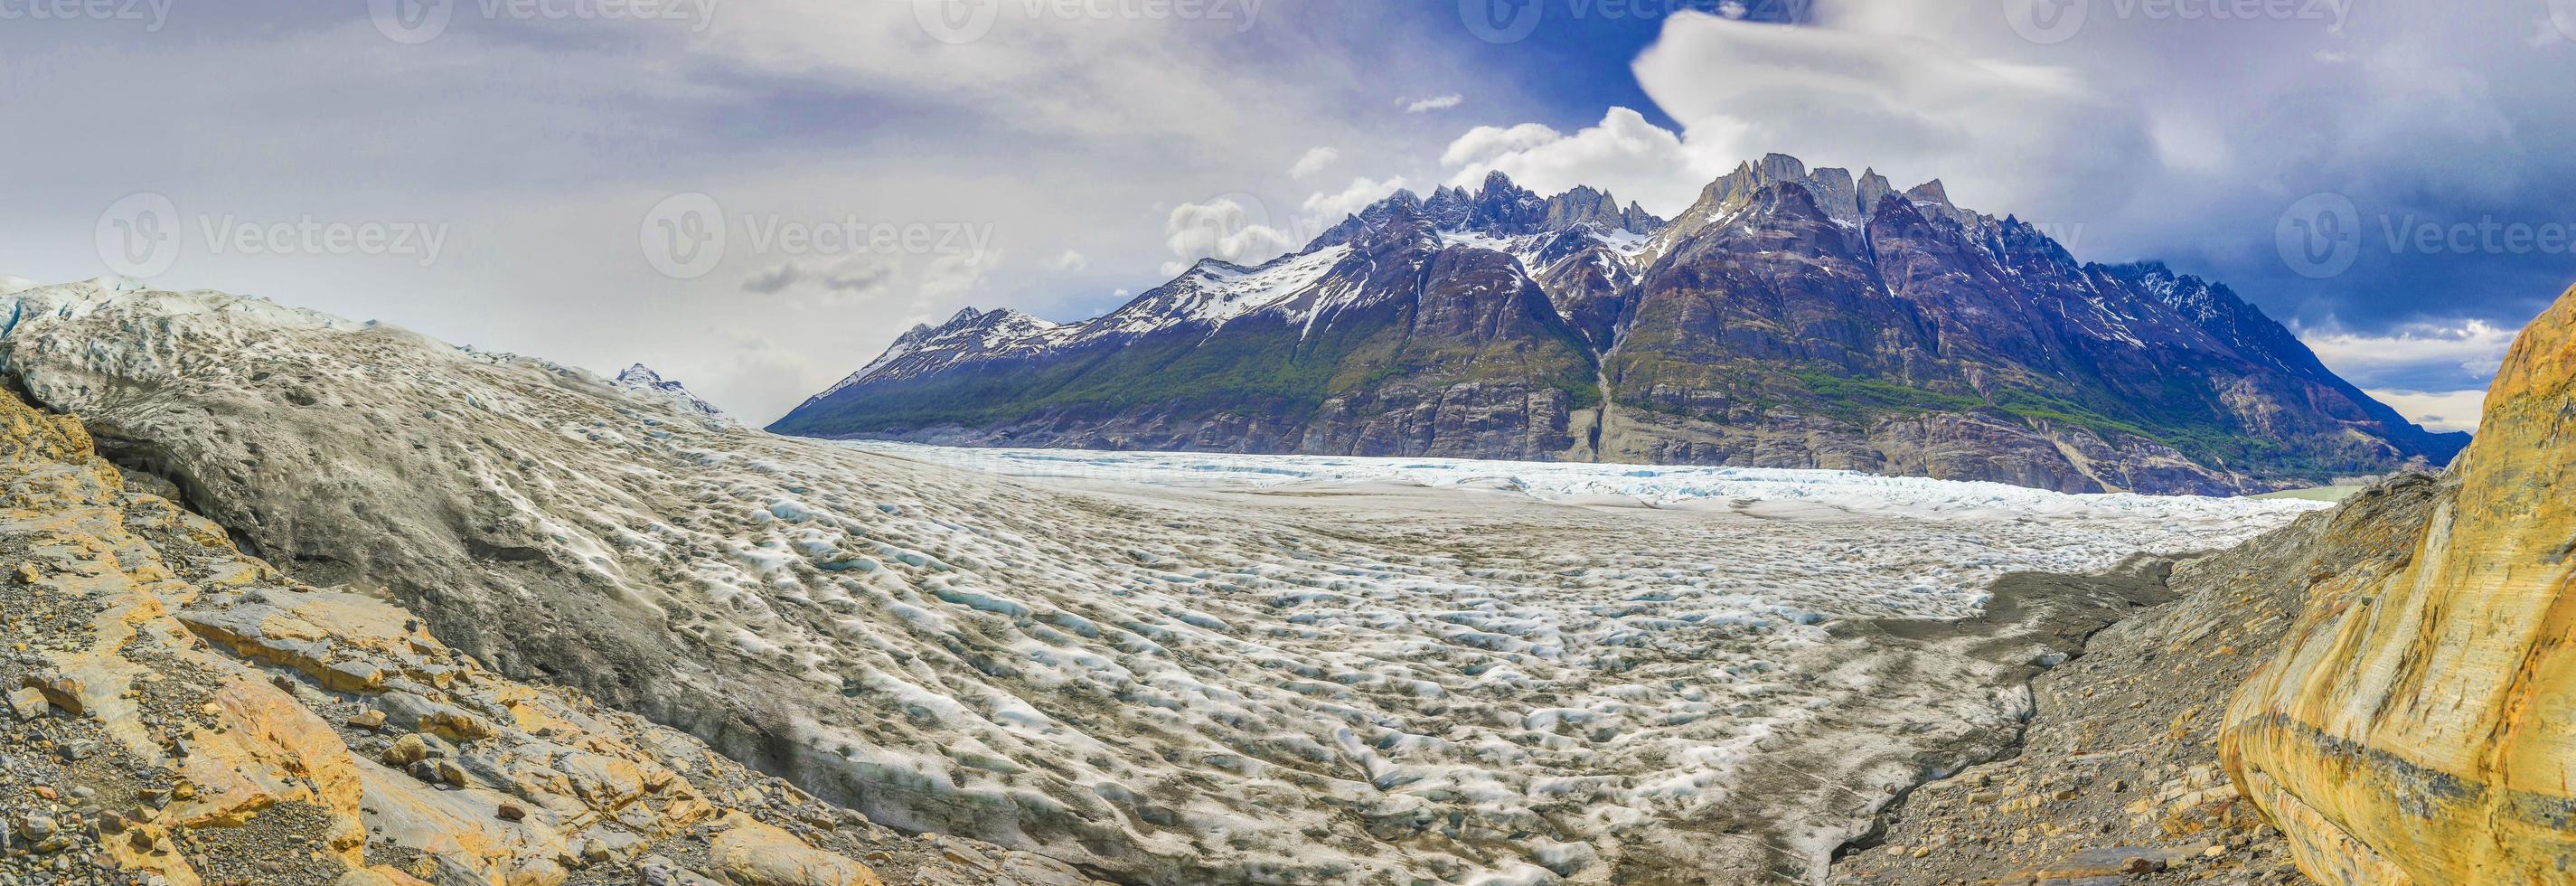 imagen del glaciar grey en el parque nacional torres del paine en patagonoa foto